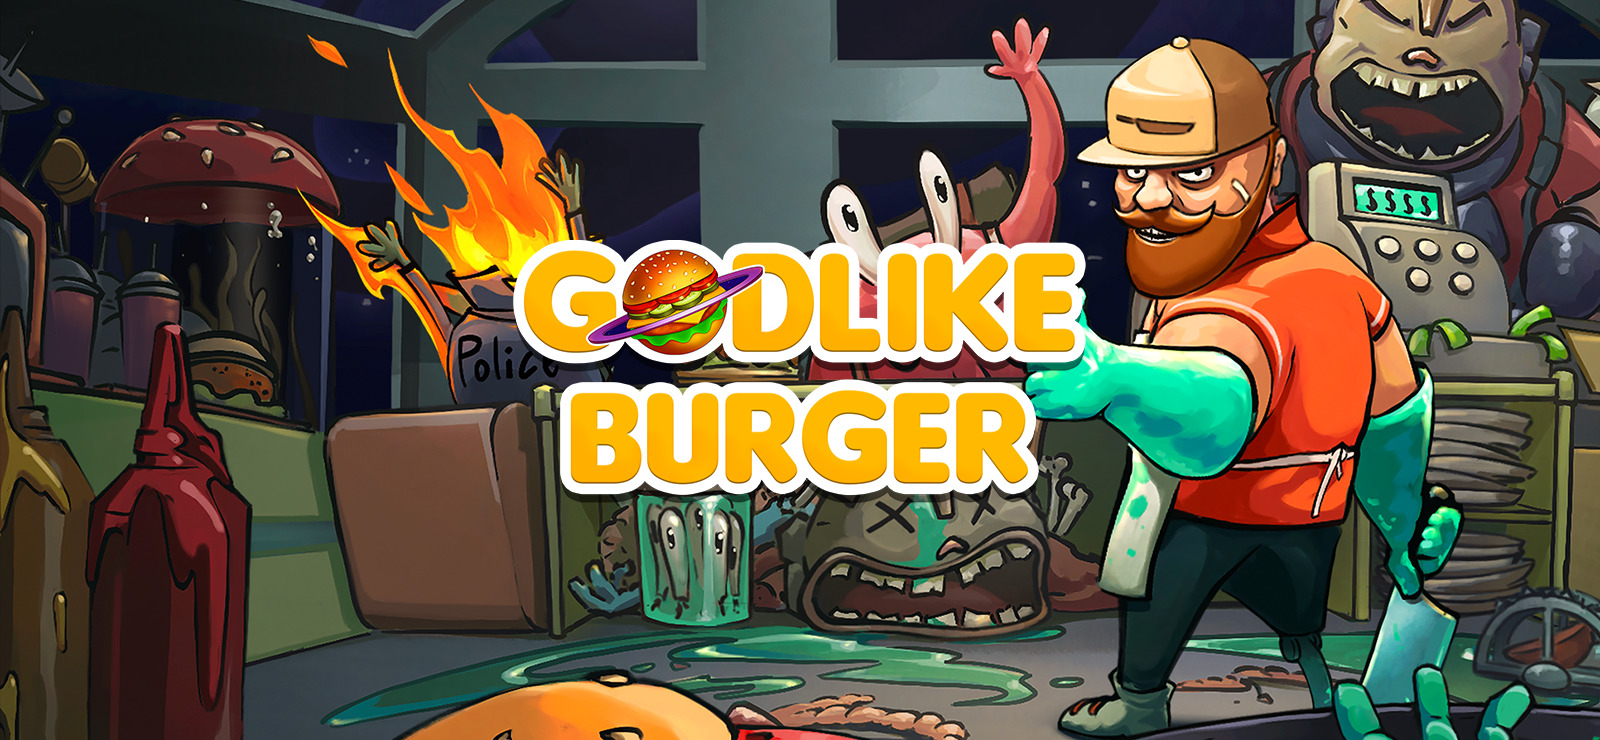 godlike-burger